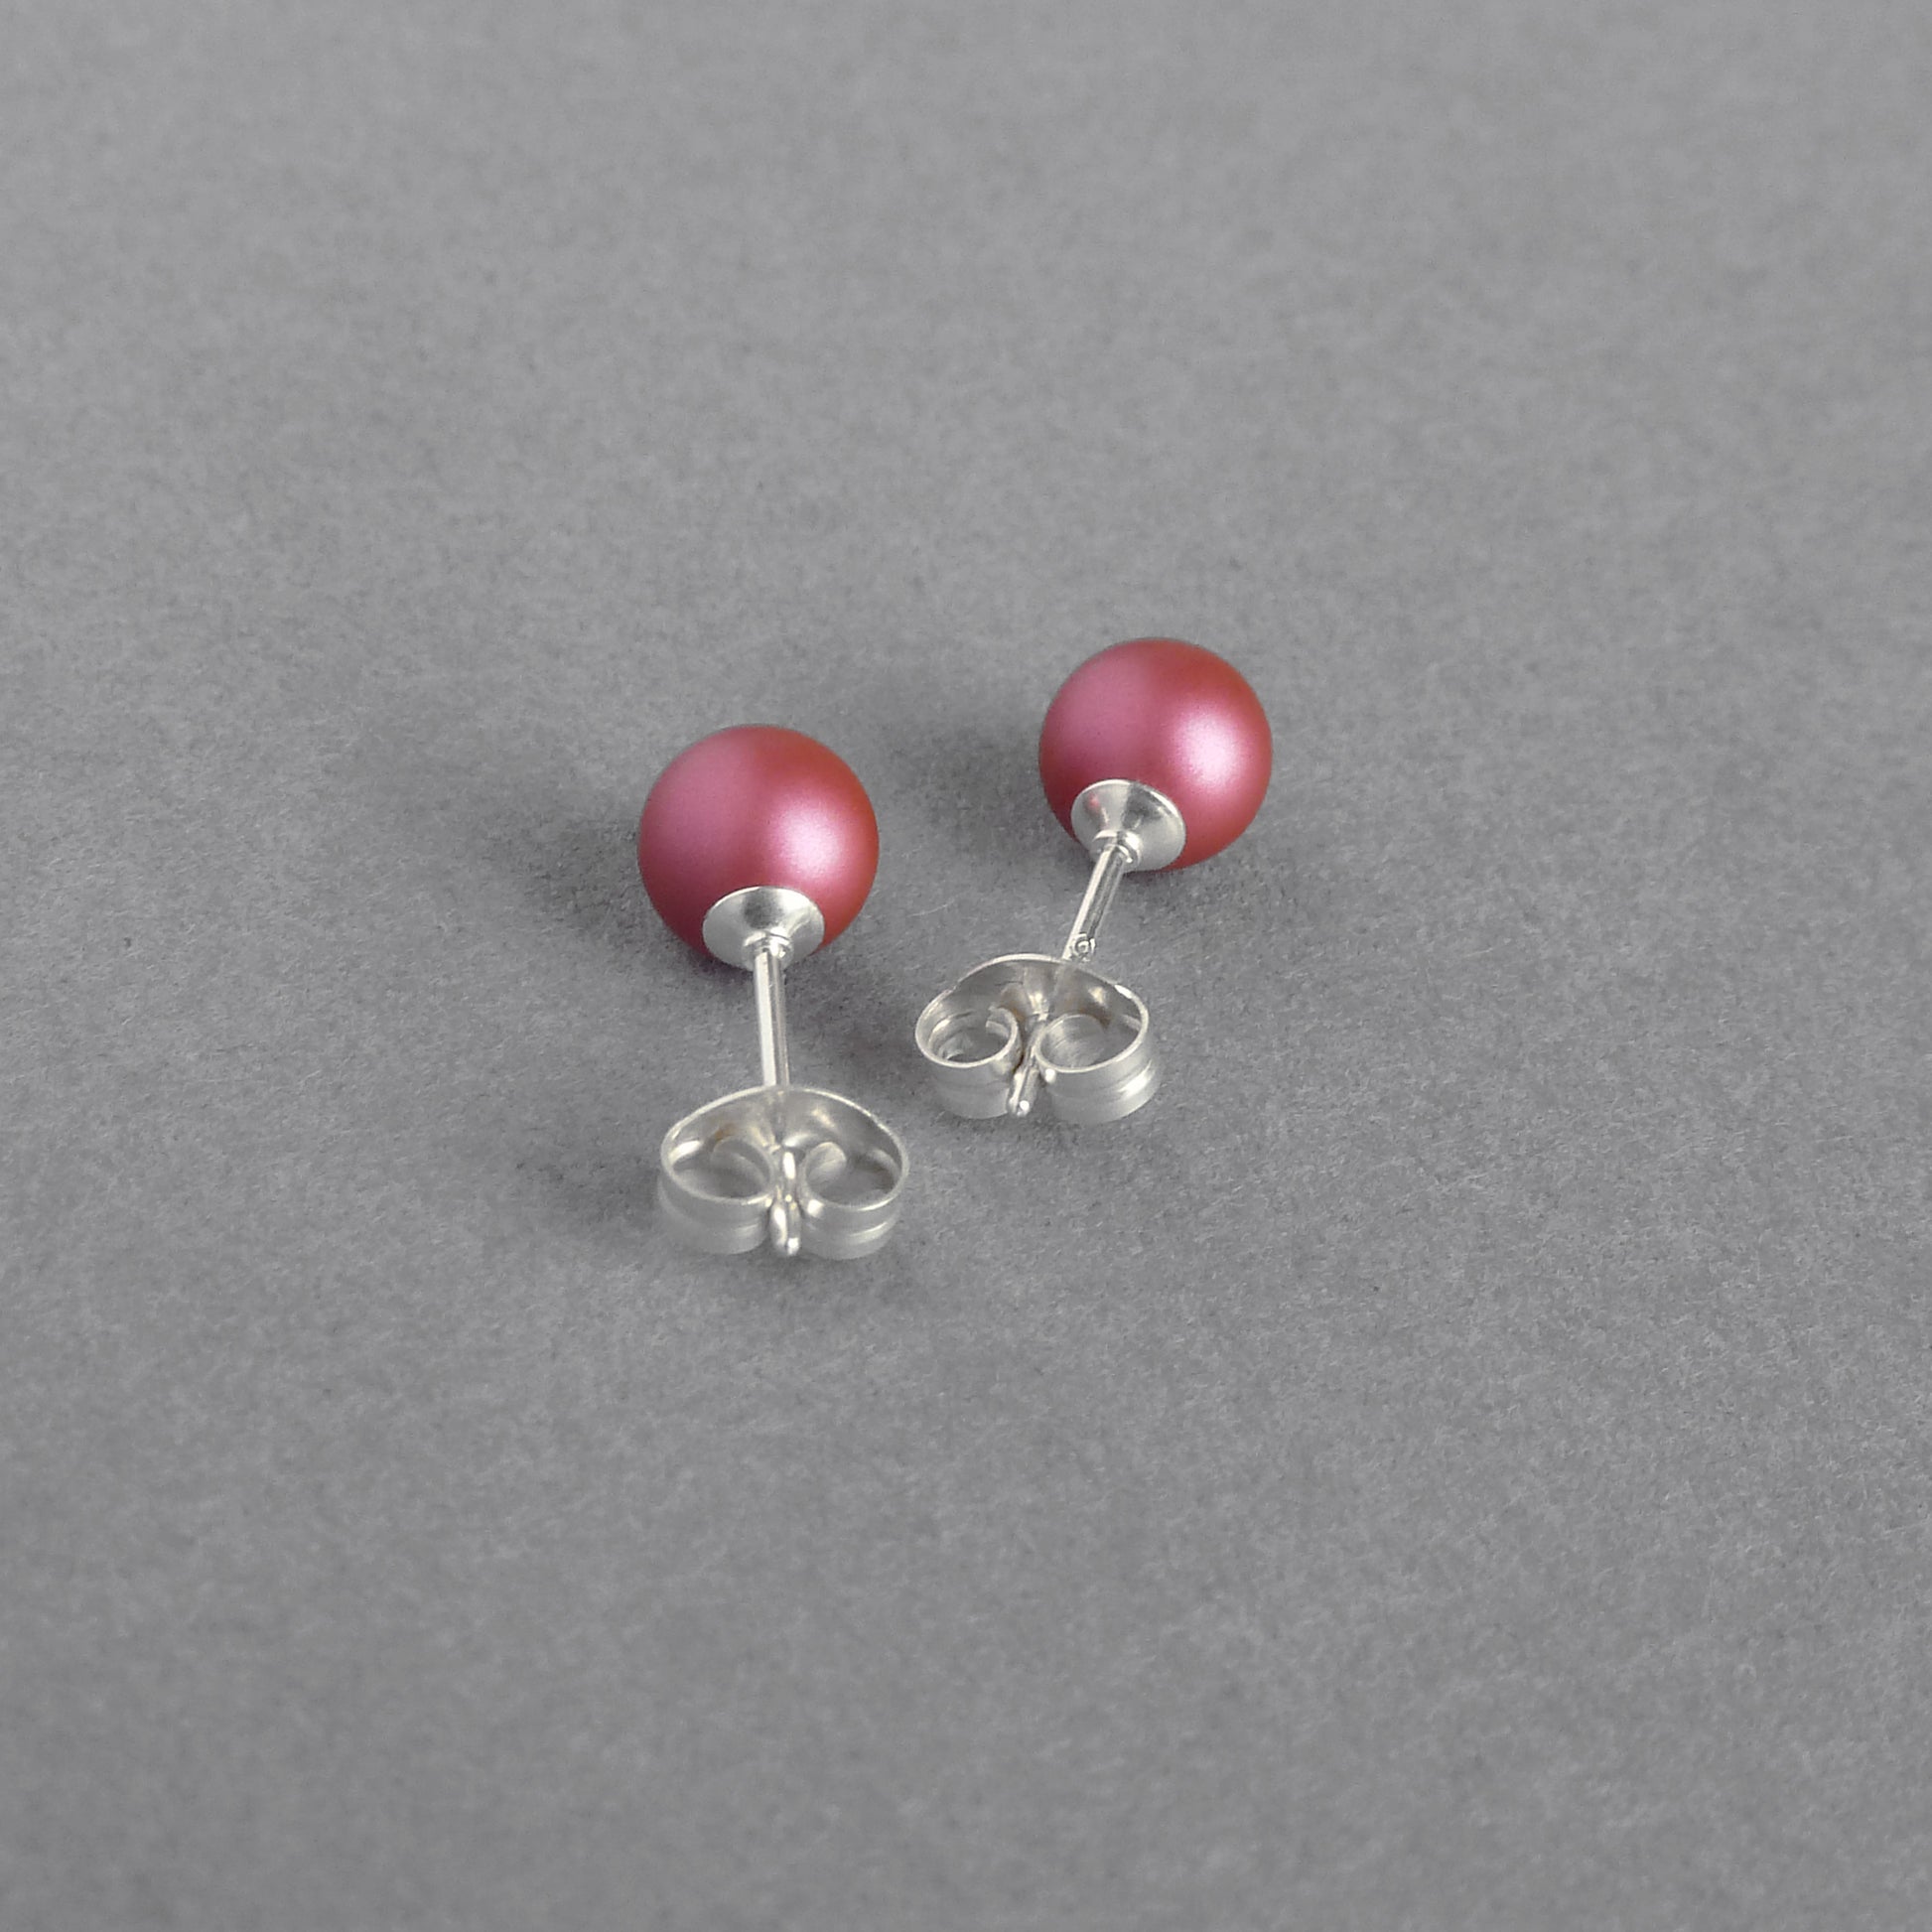 6mm dark pink stud earrings